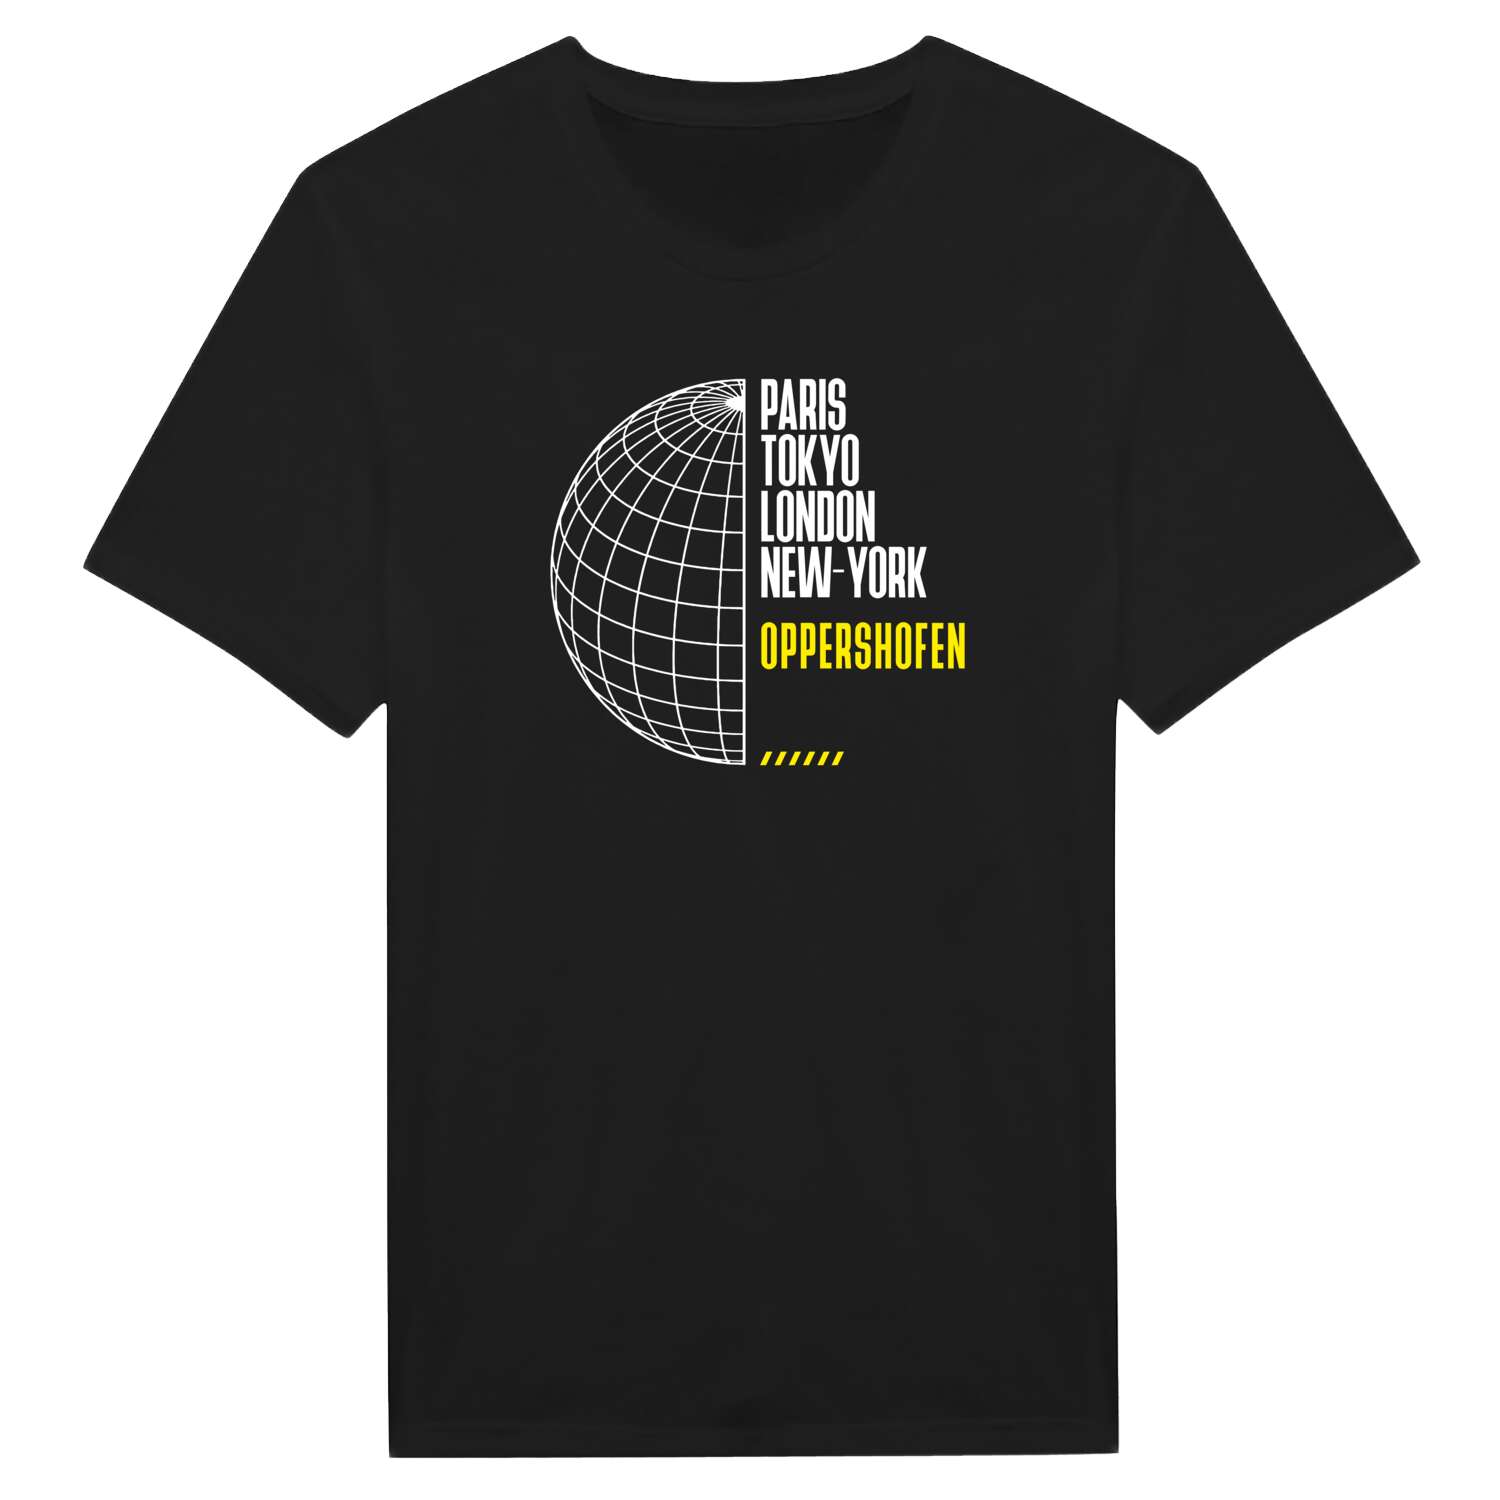 Oppershofen T-Shirt »Paris Tokyo London«